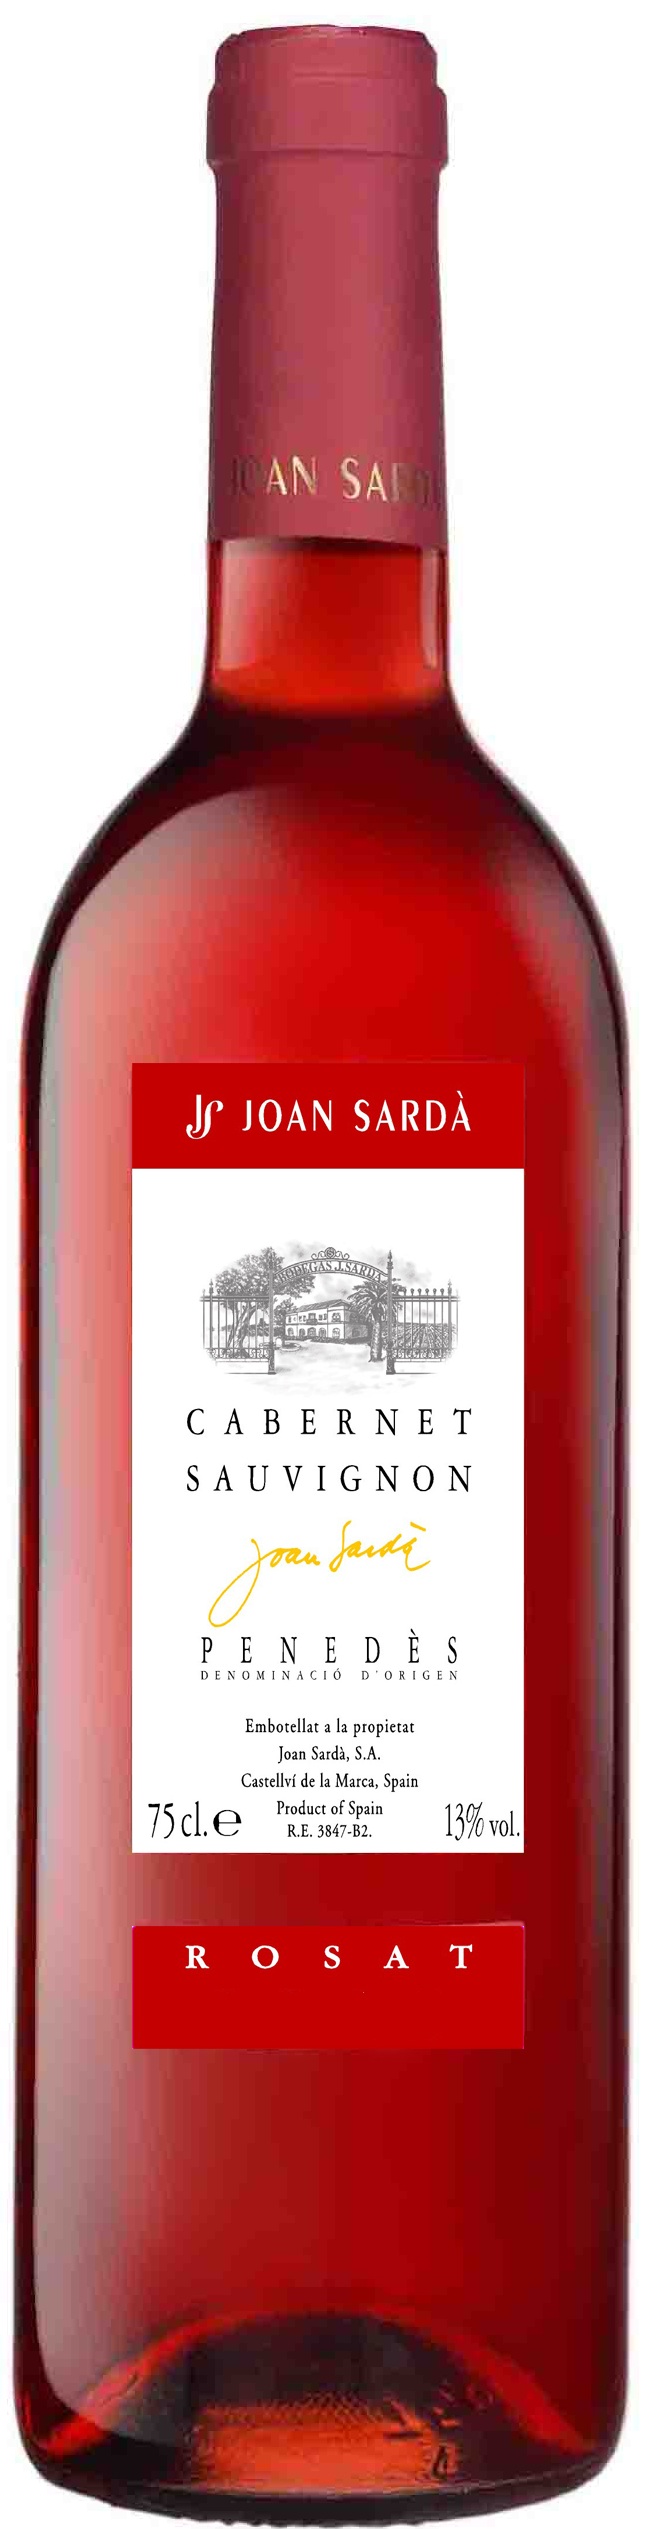 Bild von der Weinflasche Joan Sardà Cabernet Sauvignon Rosé